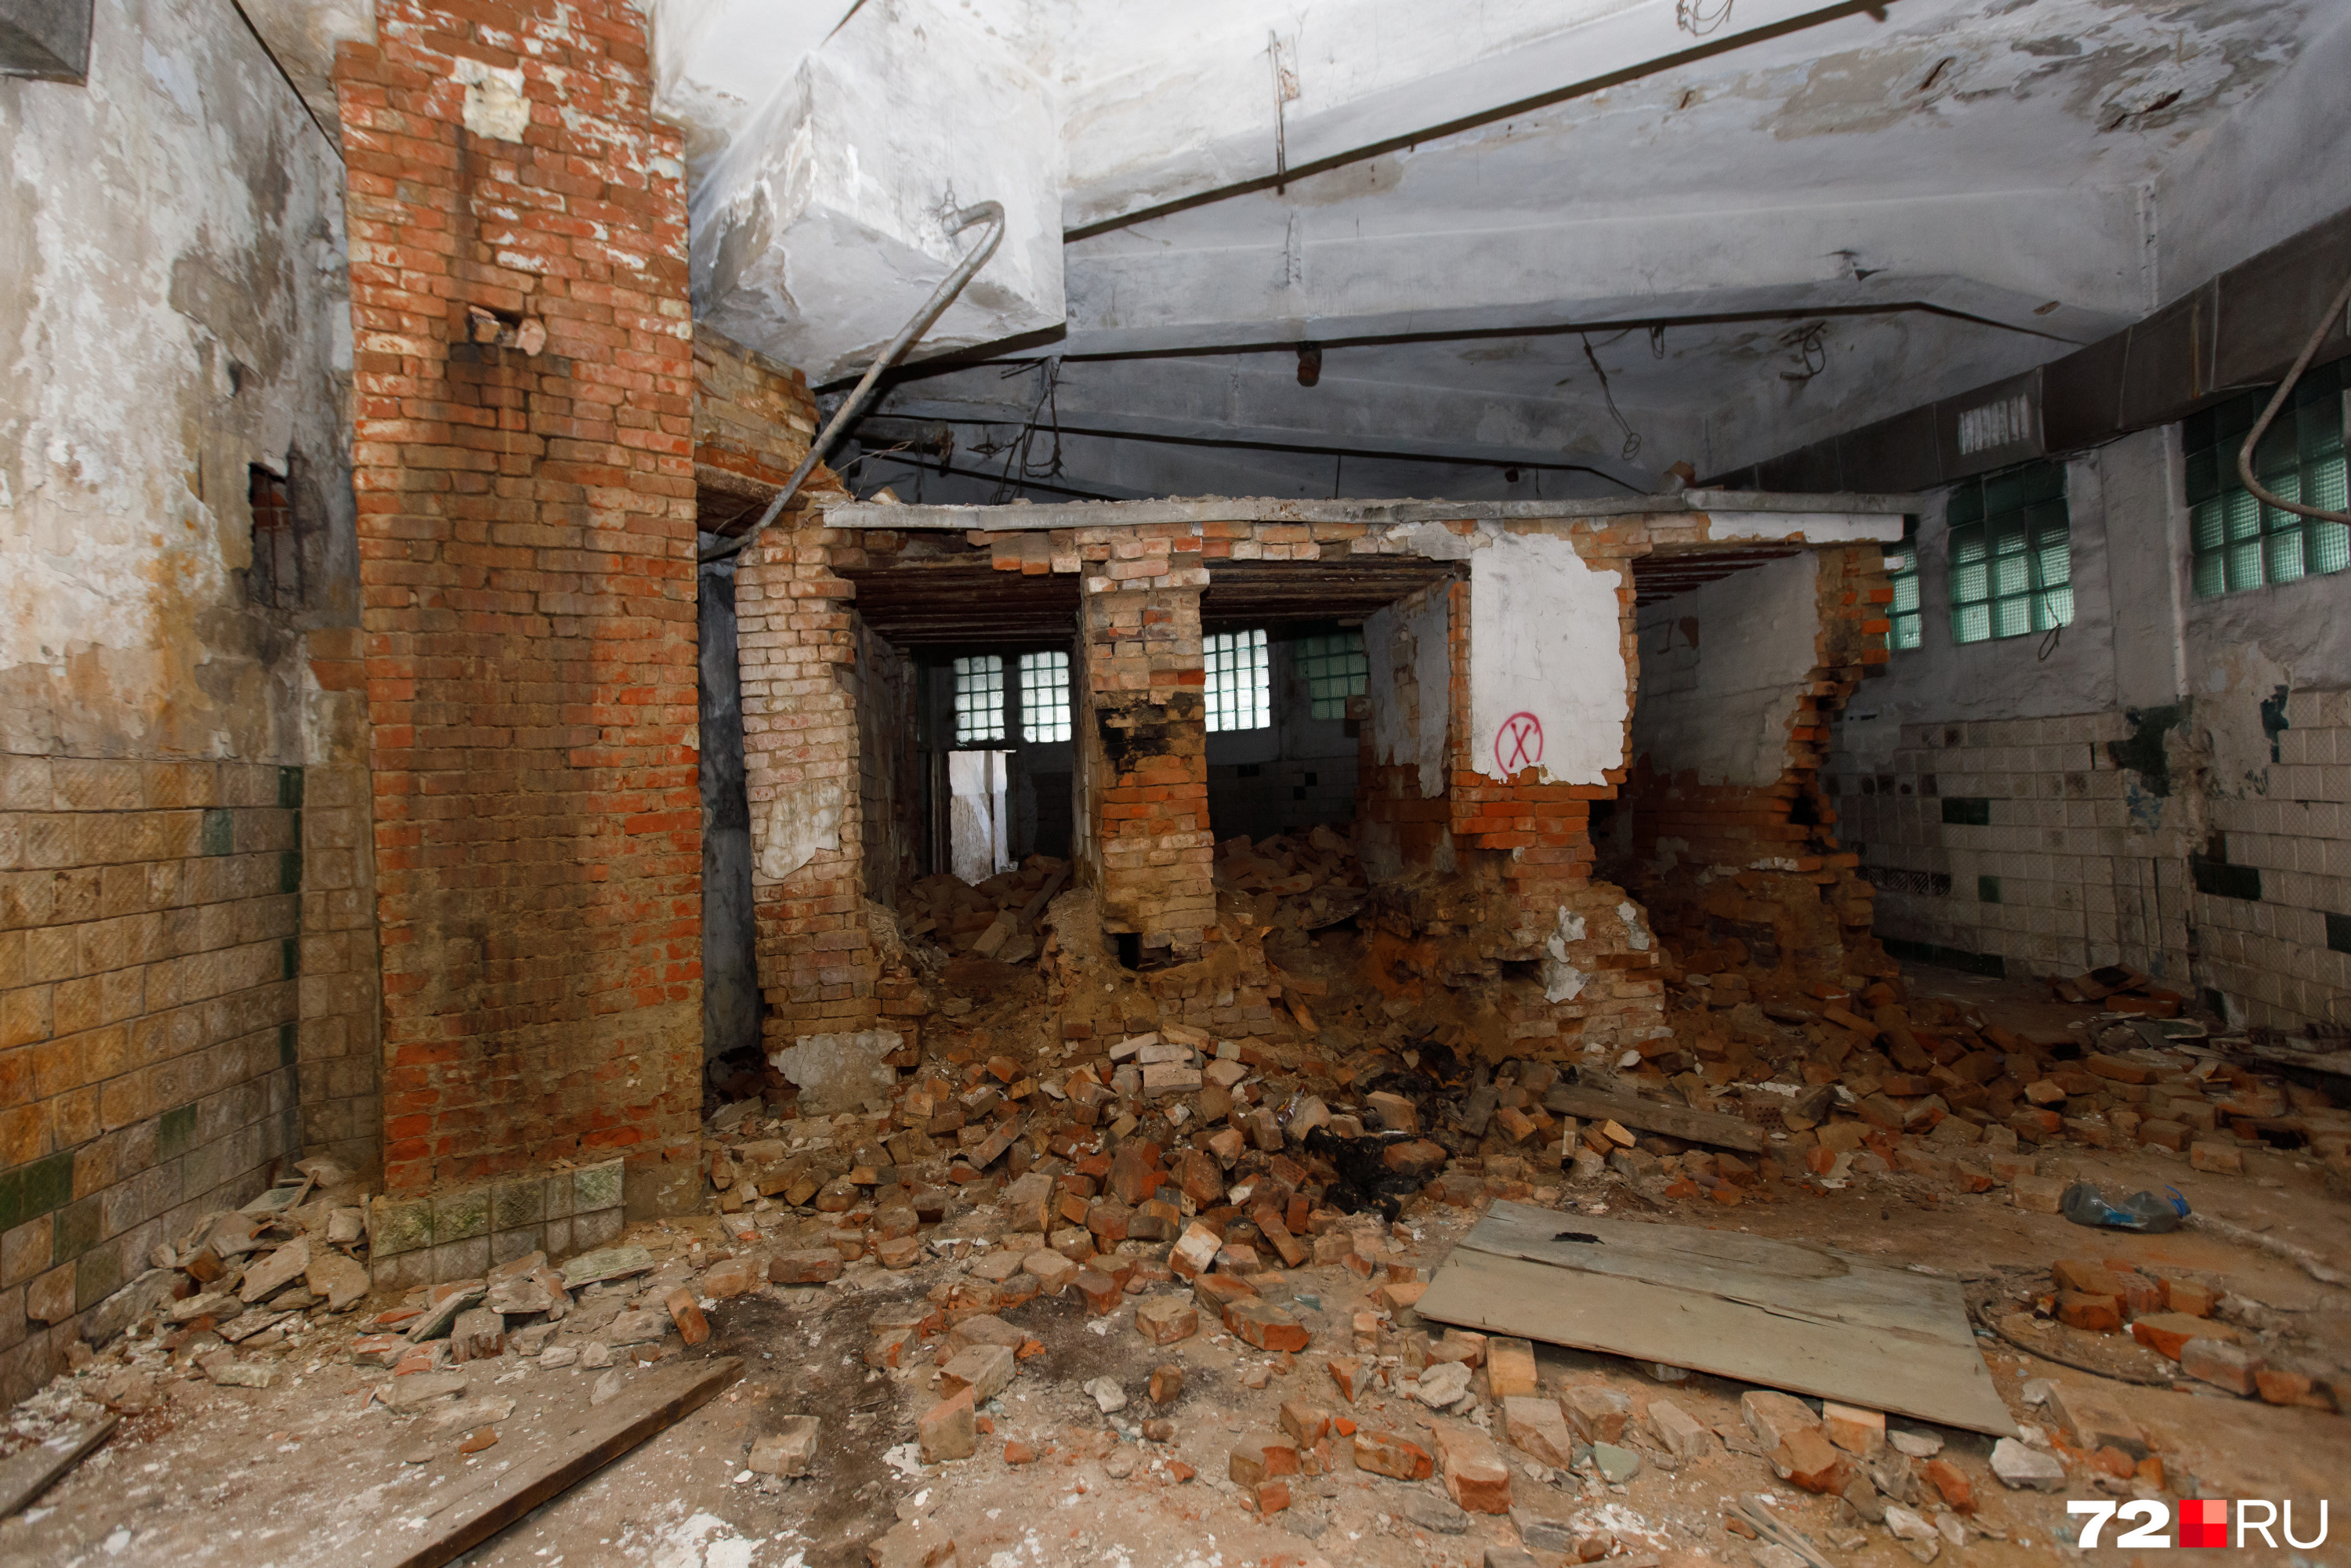 Разрушения на втором этаже круглой бани. По словам Гудова, с баней придется поработать серьезнее, чем с питерским газгольдером, с которым он имел дело